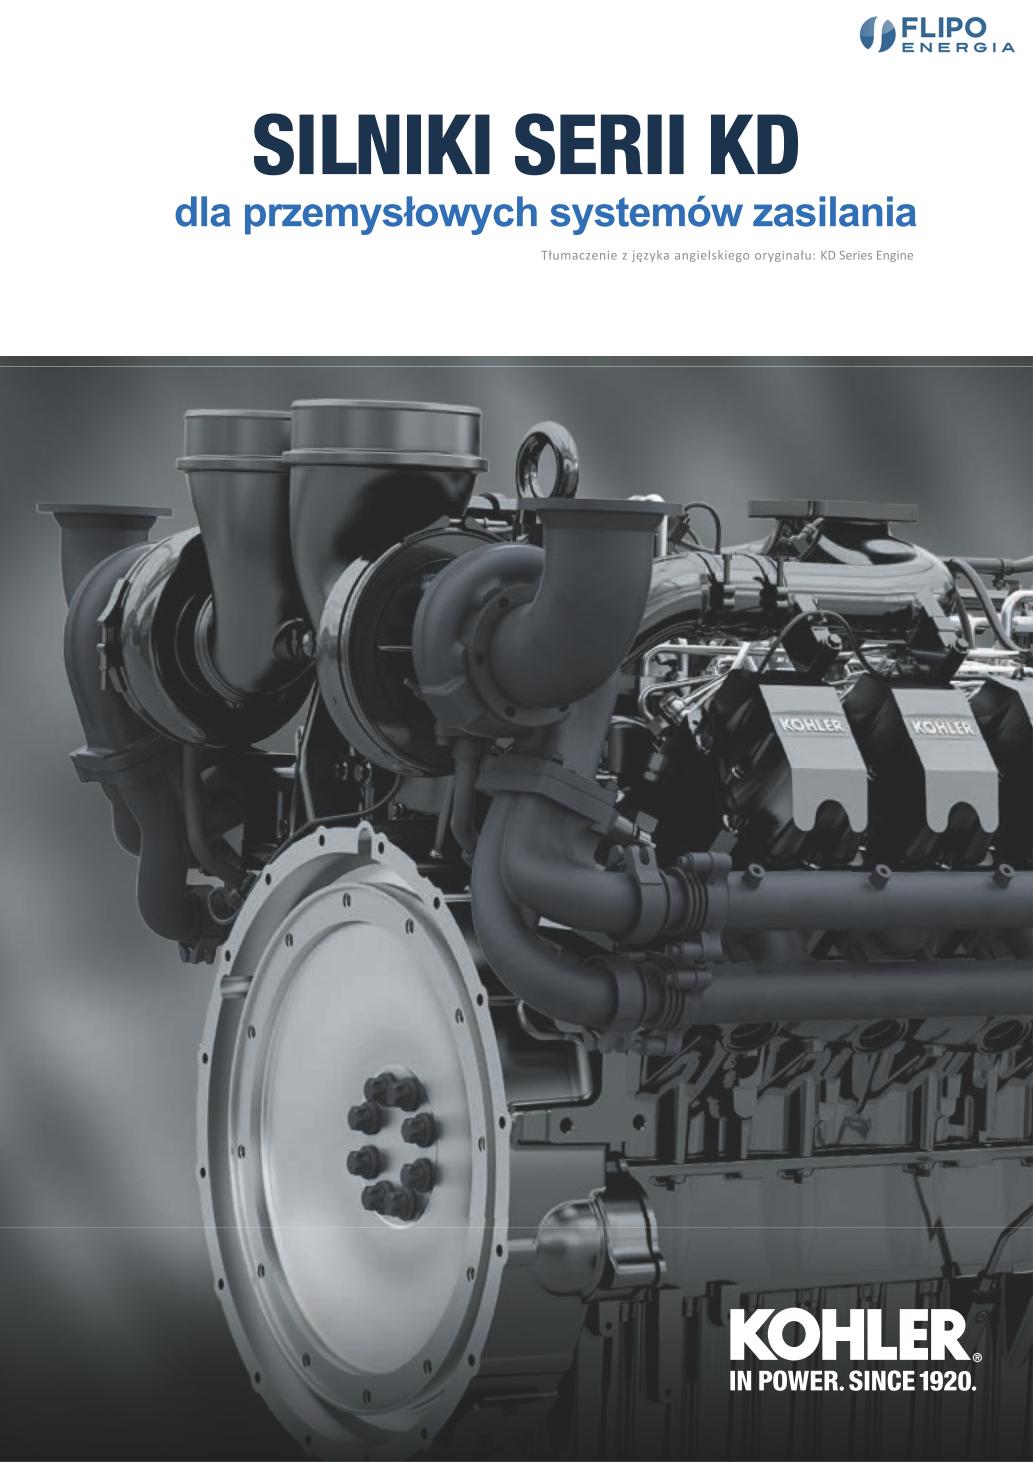 Silniki KD w agregatach dużych mocy-broszura-20201209